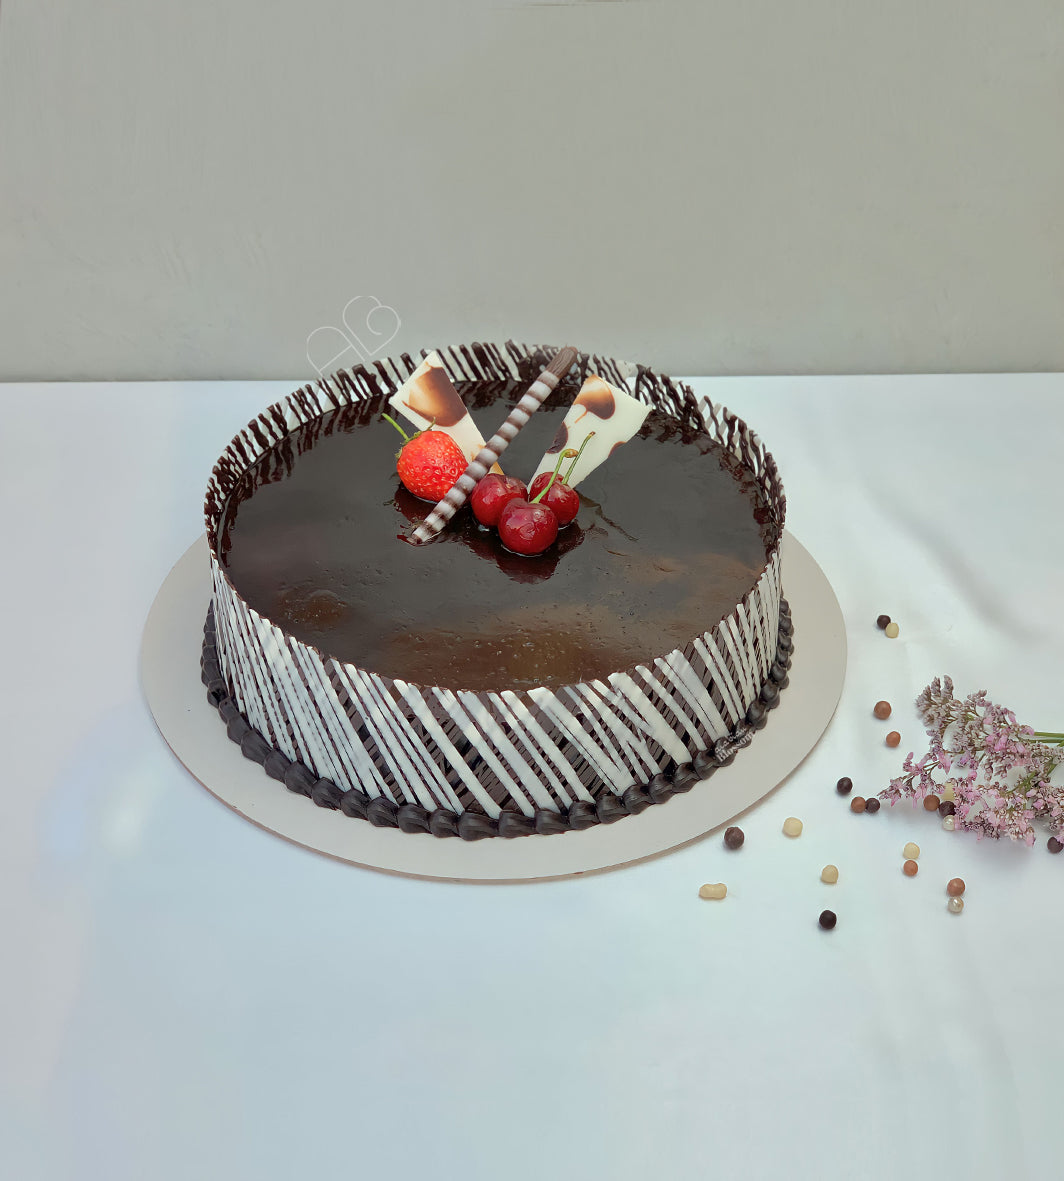 Chocolate Truffle Cake - Cakes & Dessert Bars - Chocolate - Truffle